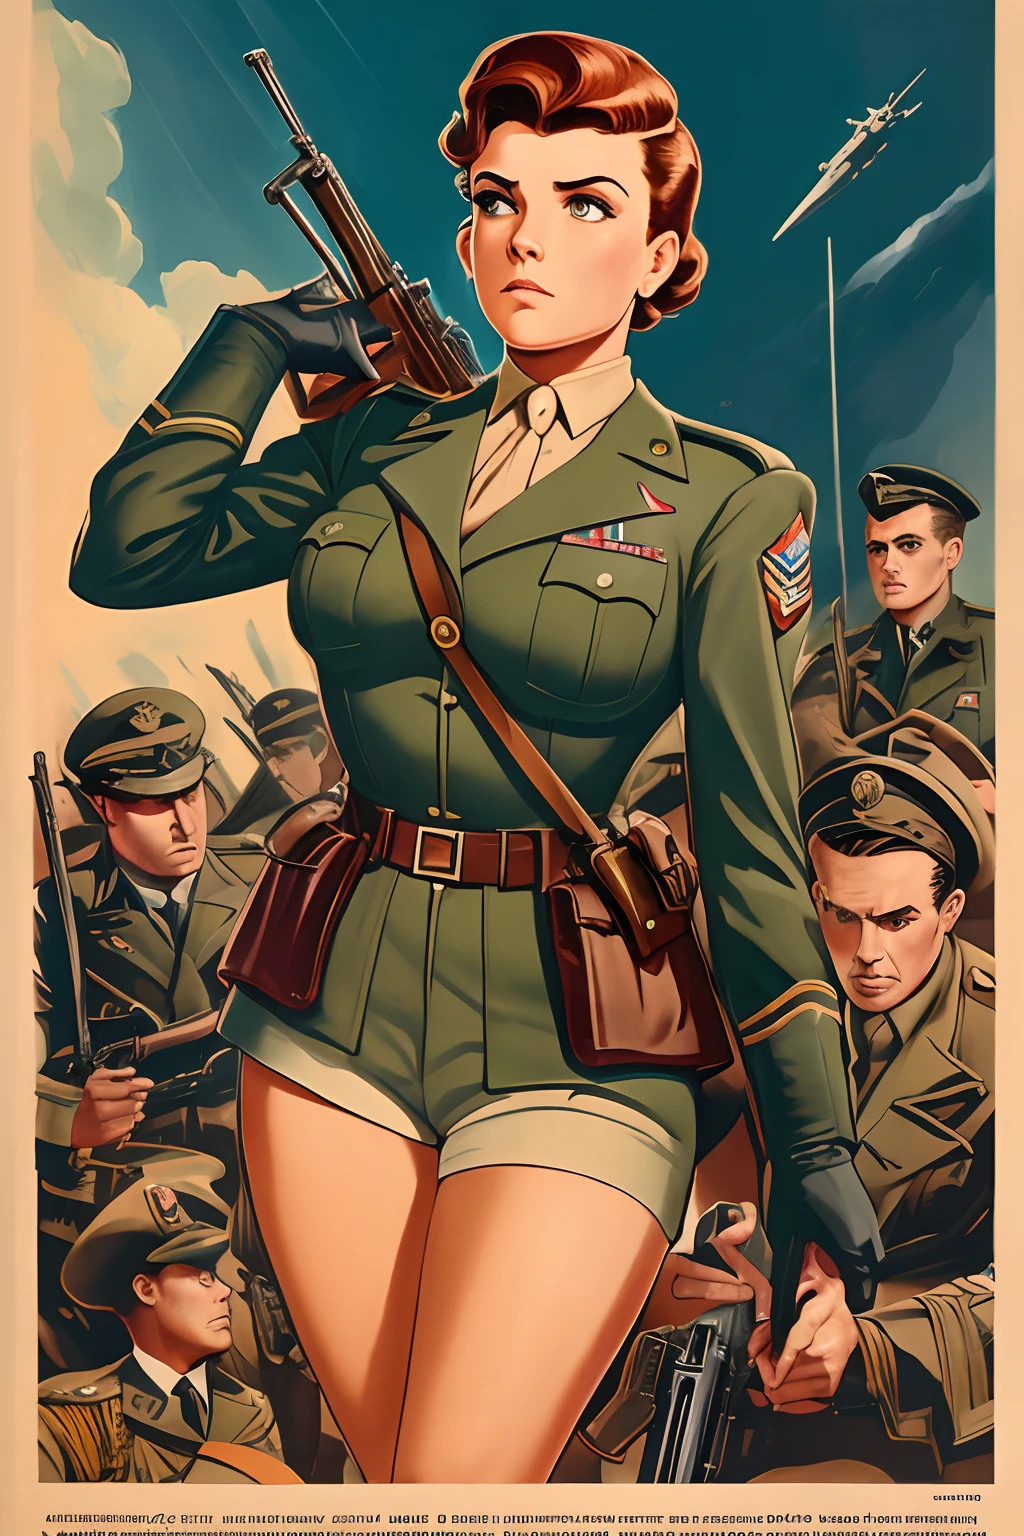 受约翰·布西马启发的艺术, 第二次世界大戰海報, 我們看到一名女學員拿著迫擊砲, 完美的軍裝, 及肩短髮, 紅色髮色, 淺綠色的眼睛, 小乳房, 修长的身材, 在戰場上威風凜凜, 砲火, 展現嚴肅和信念的場景